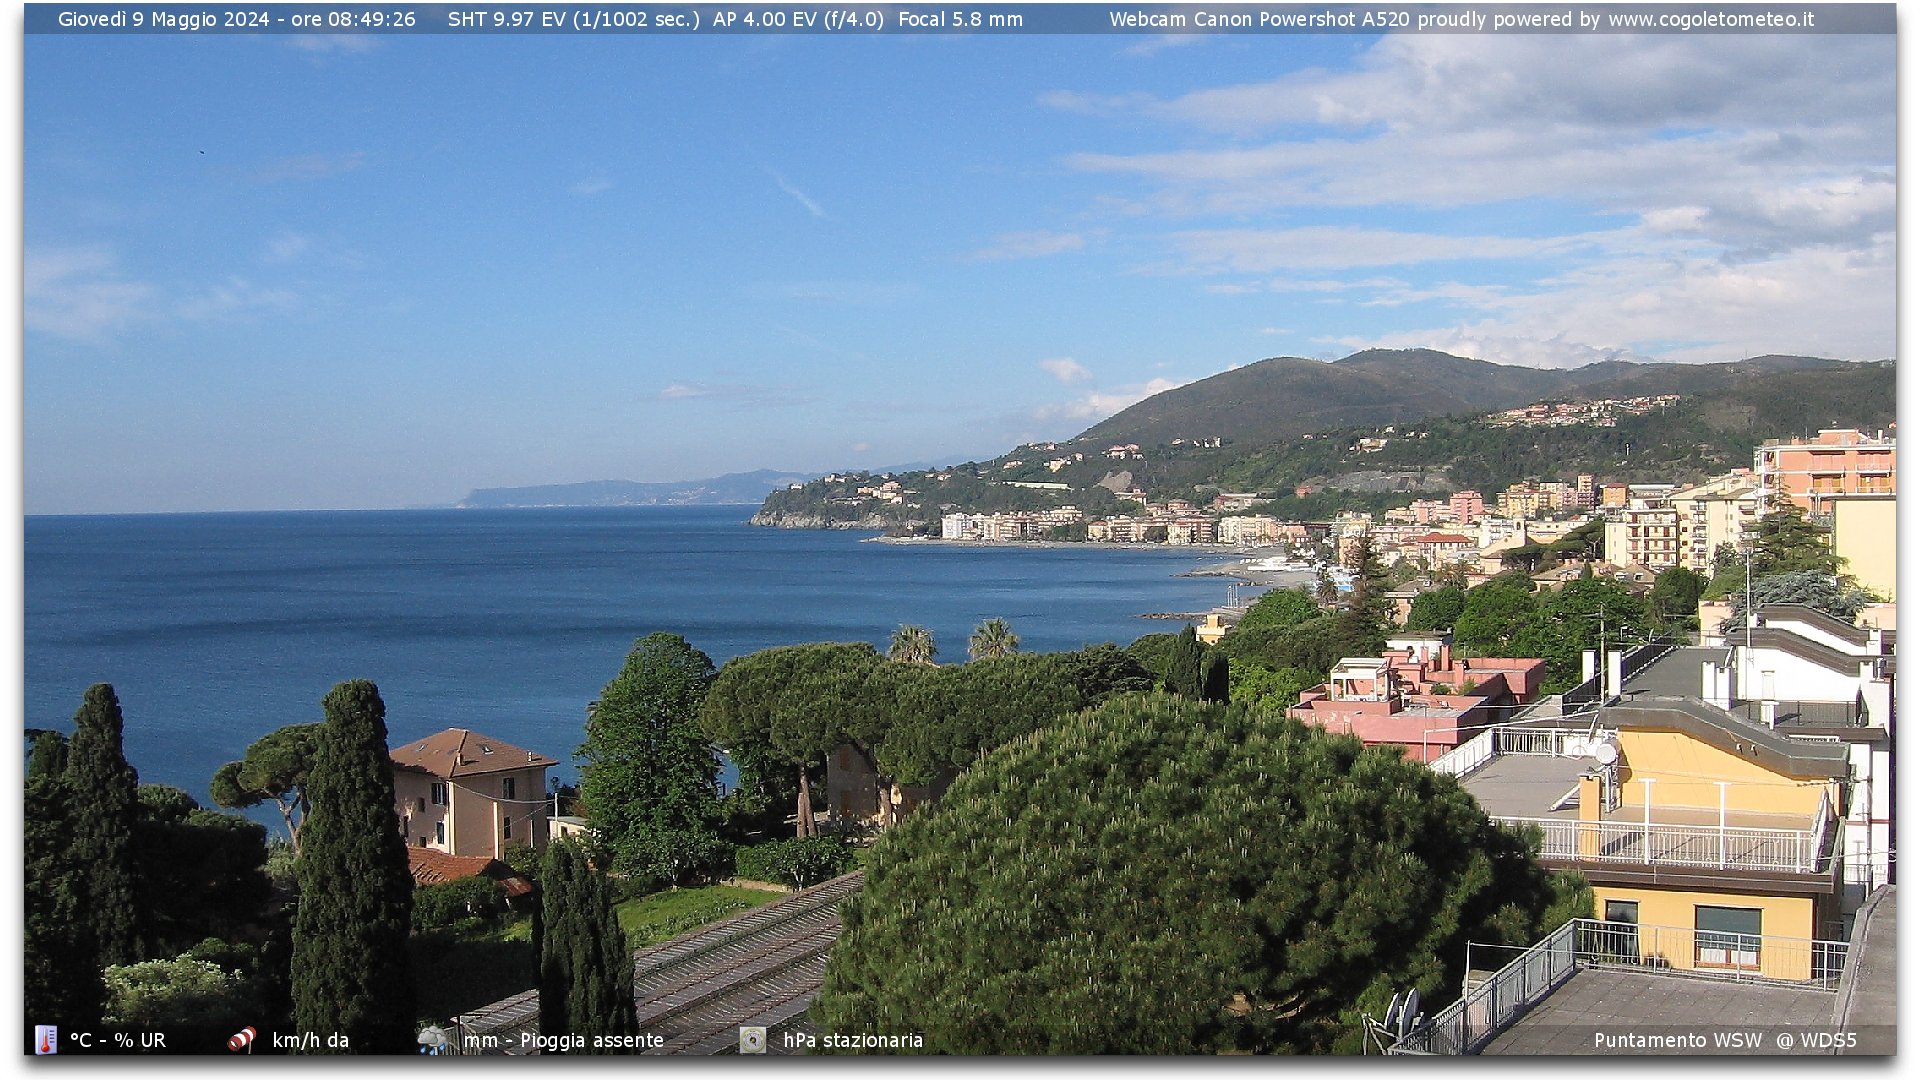 Scopri di più sull'articolo Webcam a Genova